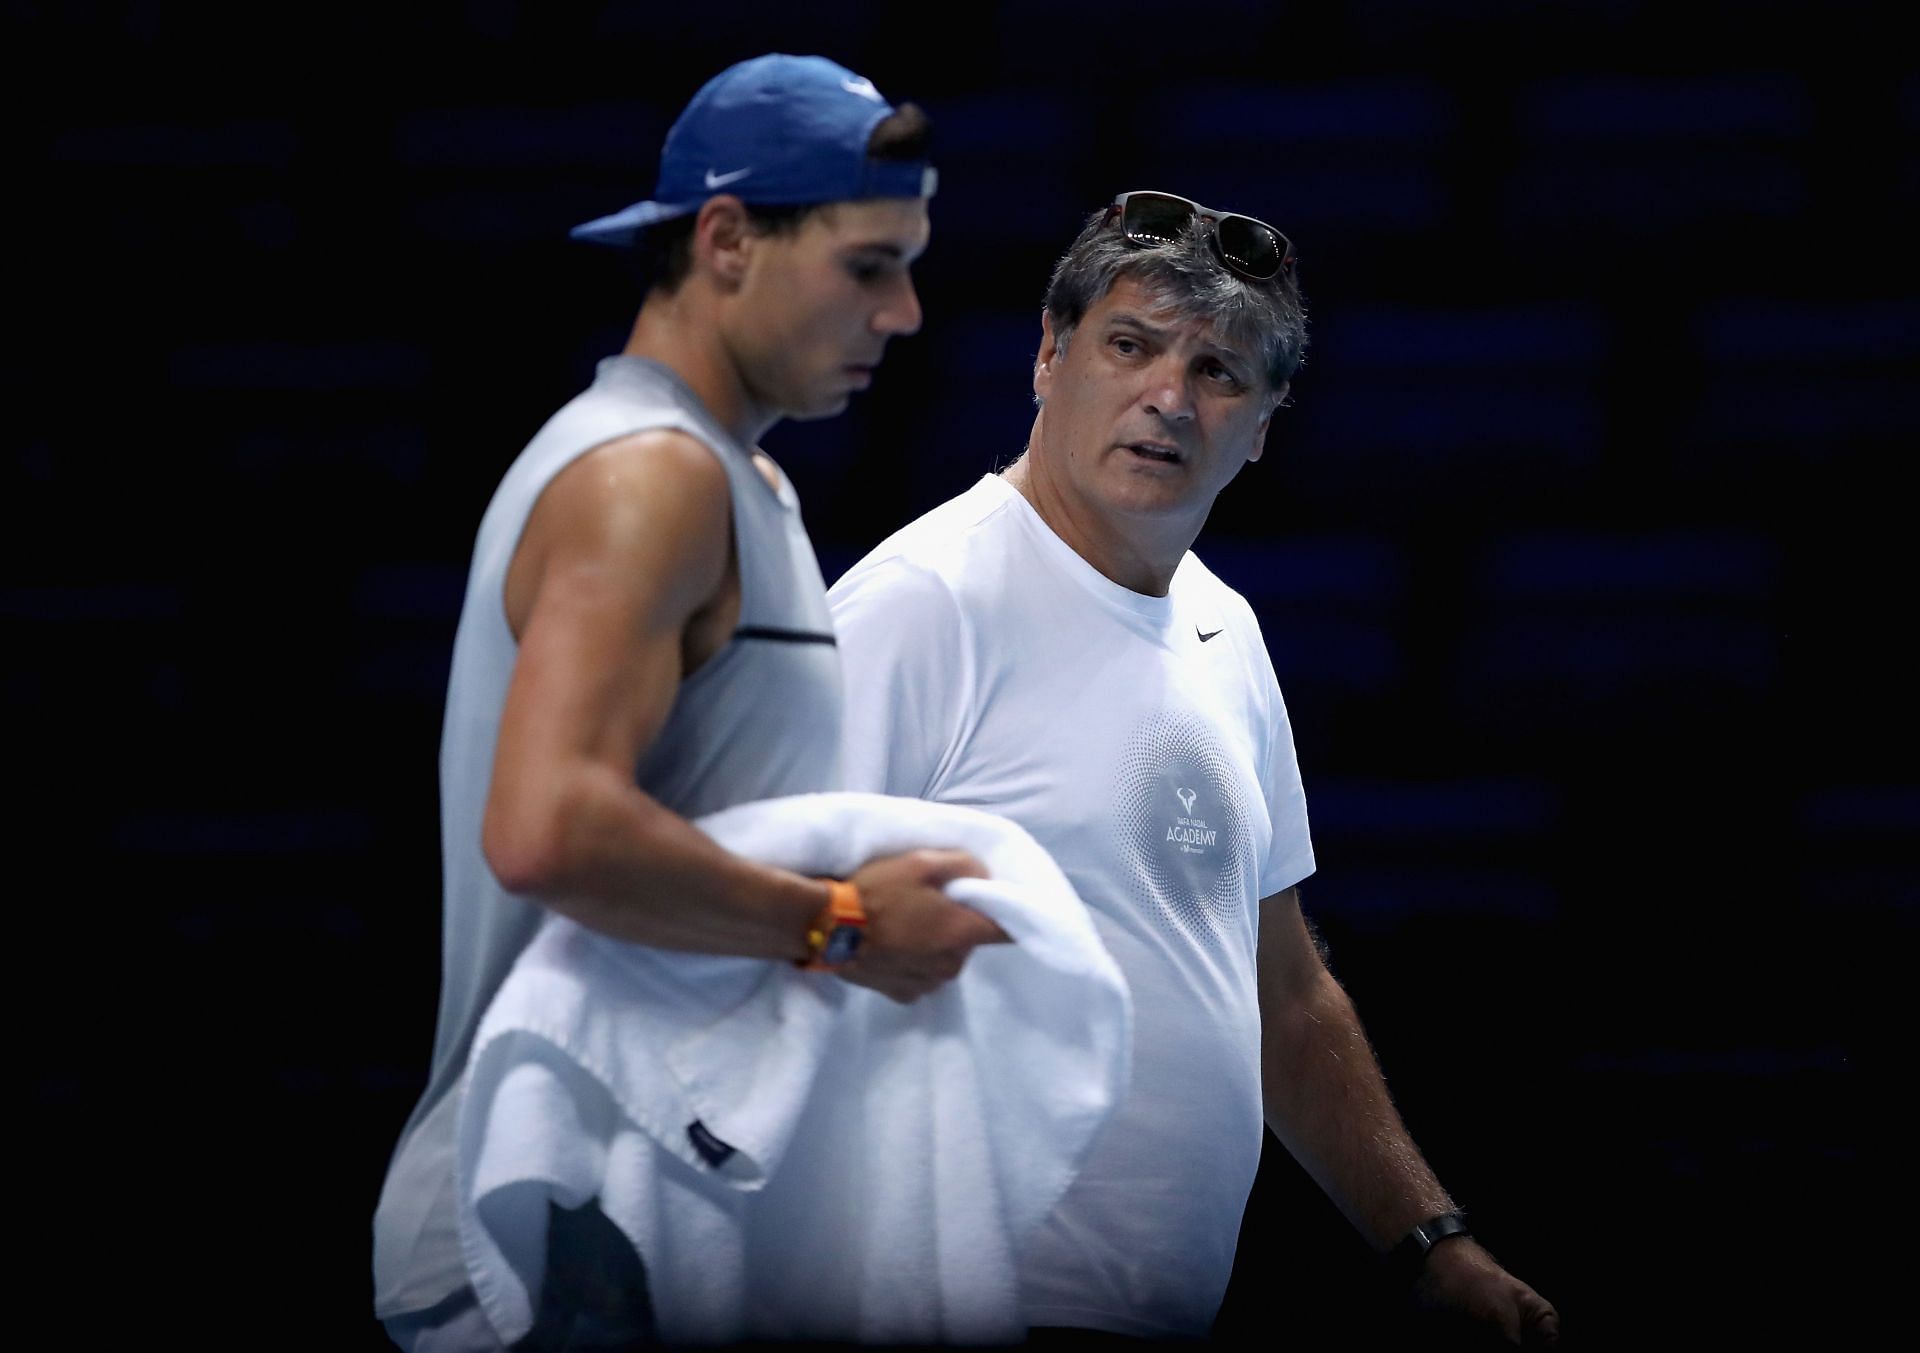 Rafael Nadal and Toni Nadal at the Nitto ATP World Tour Finals